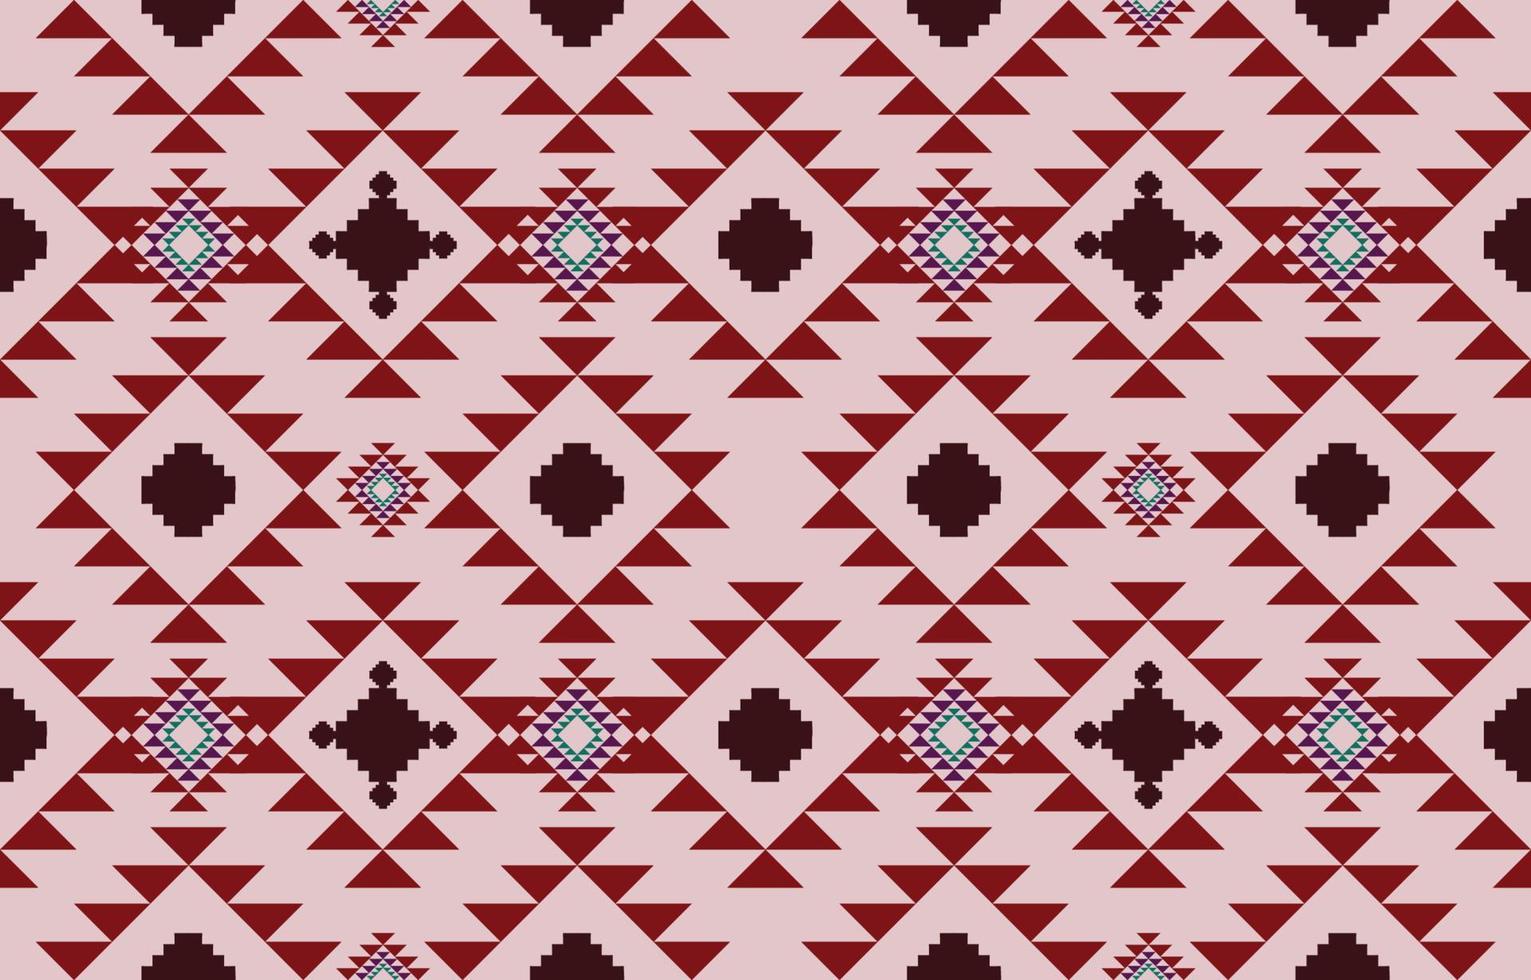 tejido navajo de patrones sin fisuras geométrico tribal étnico fondo tradicional, elementos de diseño nativo americano, diseño para alfombra, papel pintado, ropa, alfombra, interior, bordado de ilustración vectorial. vector